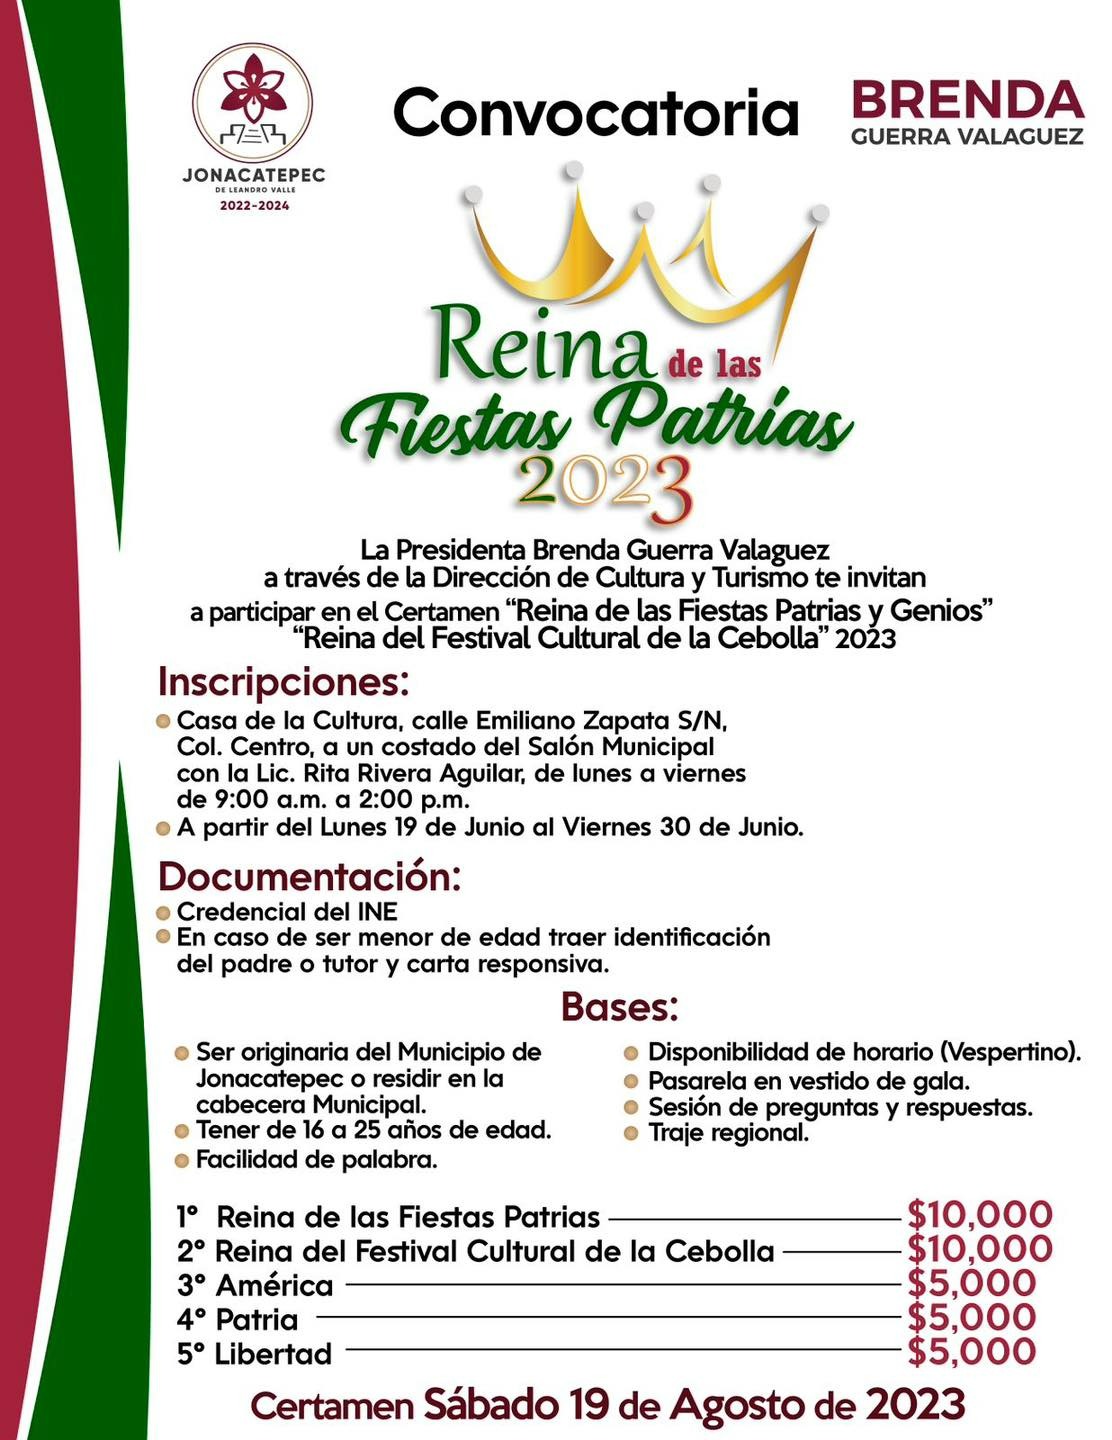 Convocatorias “Reina Fiestas Patrias” “Genios” y “Reina del Festival Cultural de la Cebolla” 2023